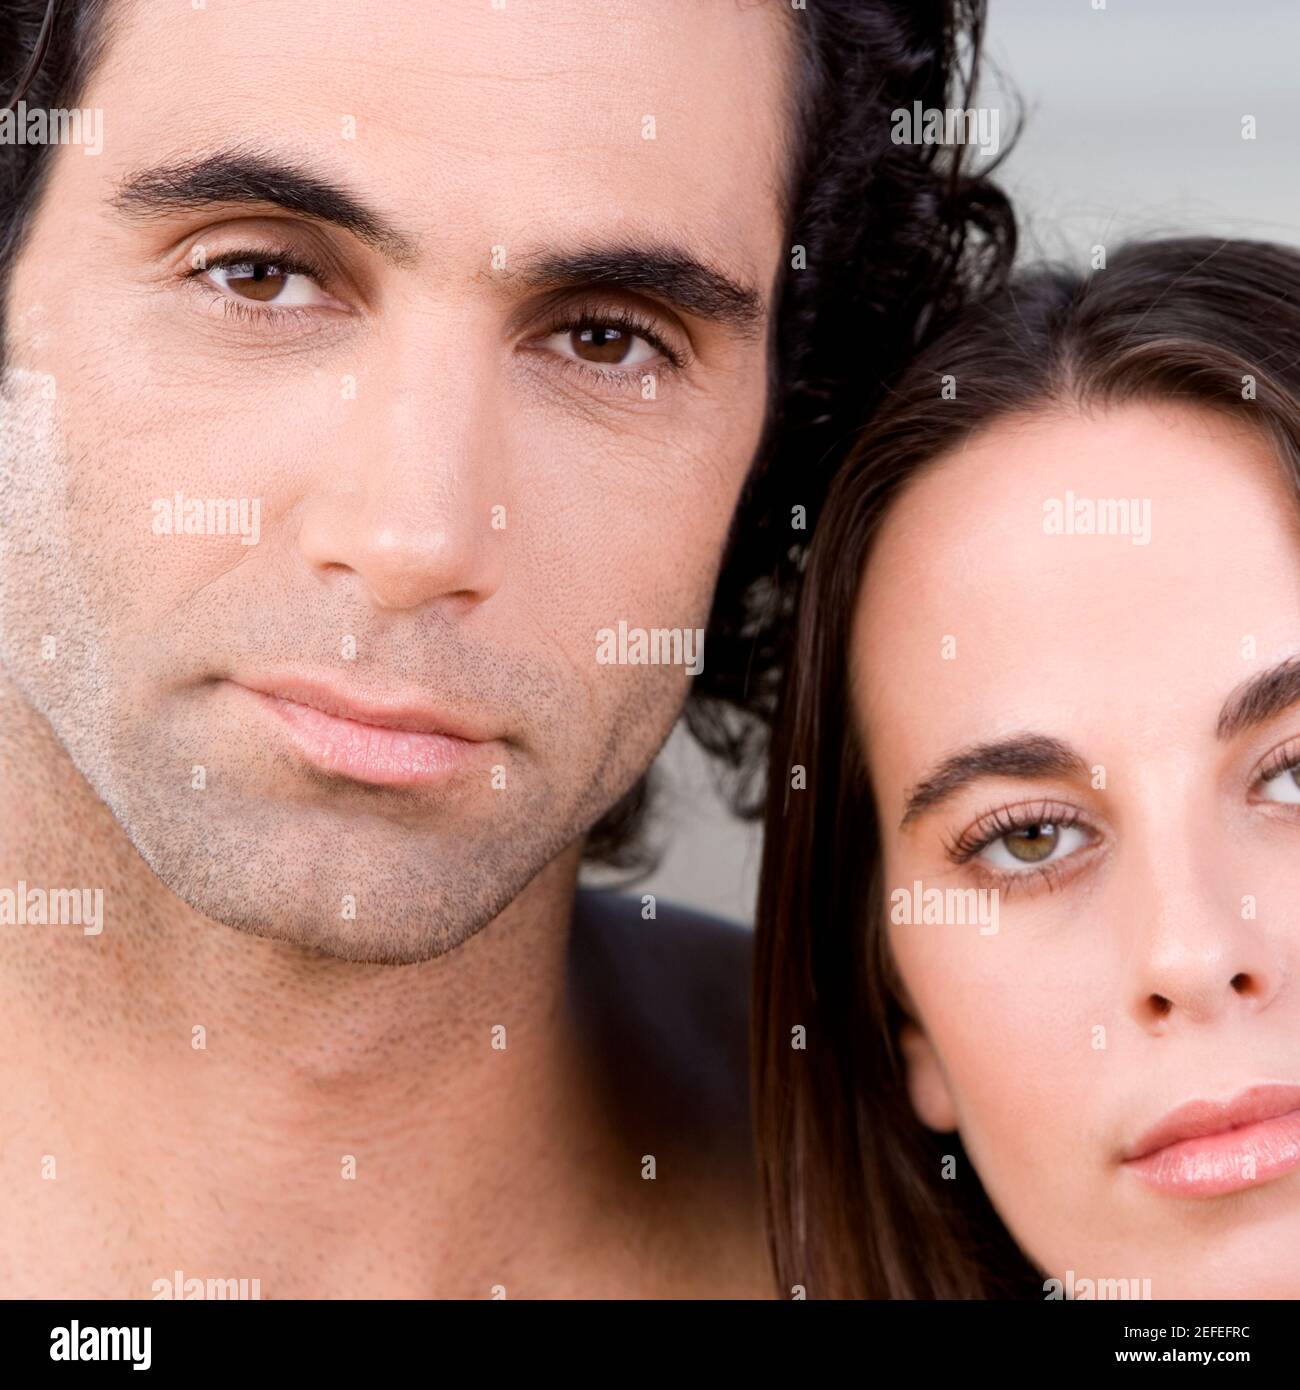 Porträt von einem erwachsenen Mann und eine junge Frau Stockfoto